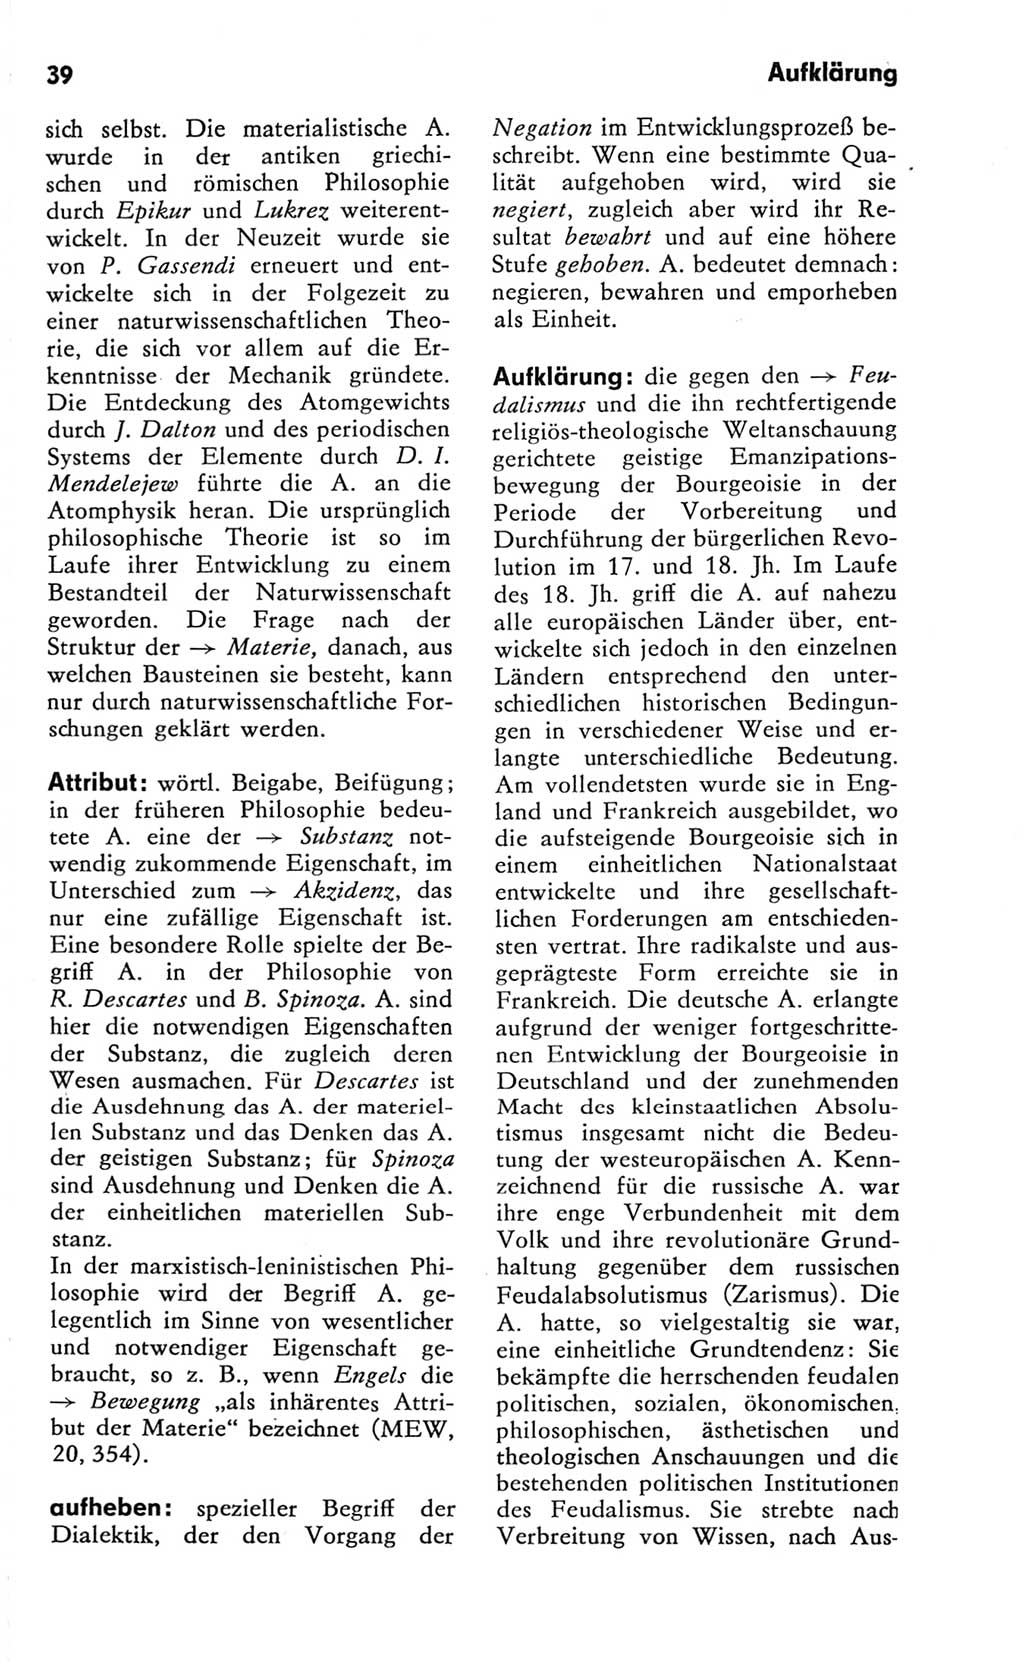 Kleines Wörterbuch der marxistisch-leninistischen Philosophie [Deutsche Demokratische Republik (DDR)] 1981, Seite 39 (Kl. Wb. ML Phil. DDR 1981, S. 39)